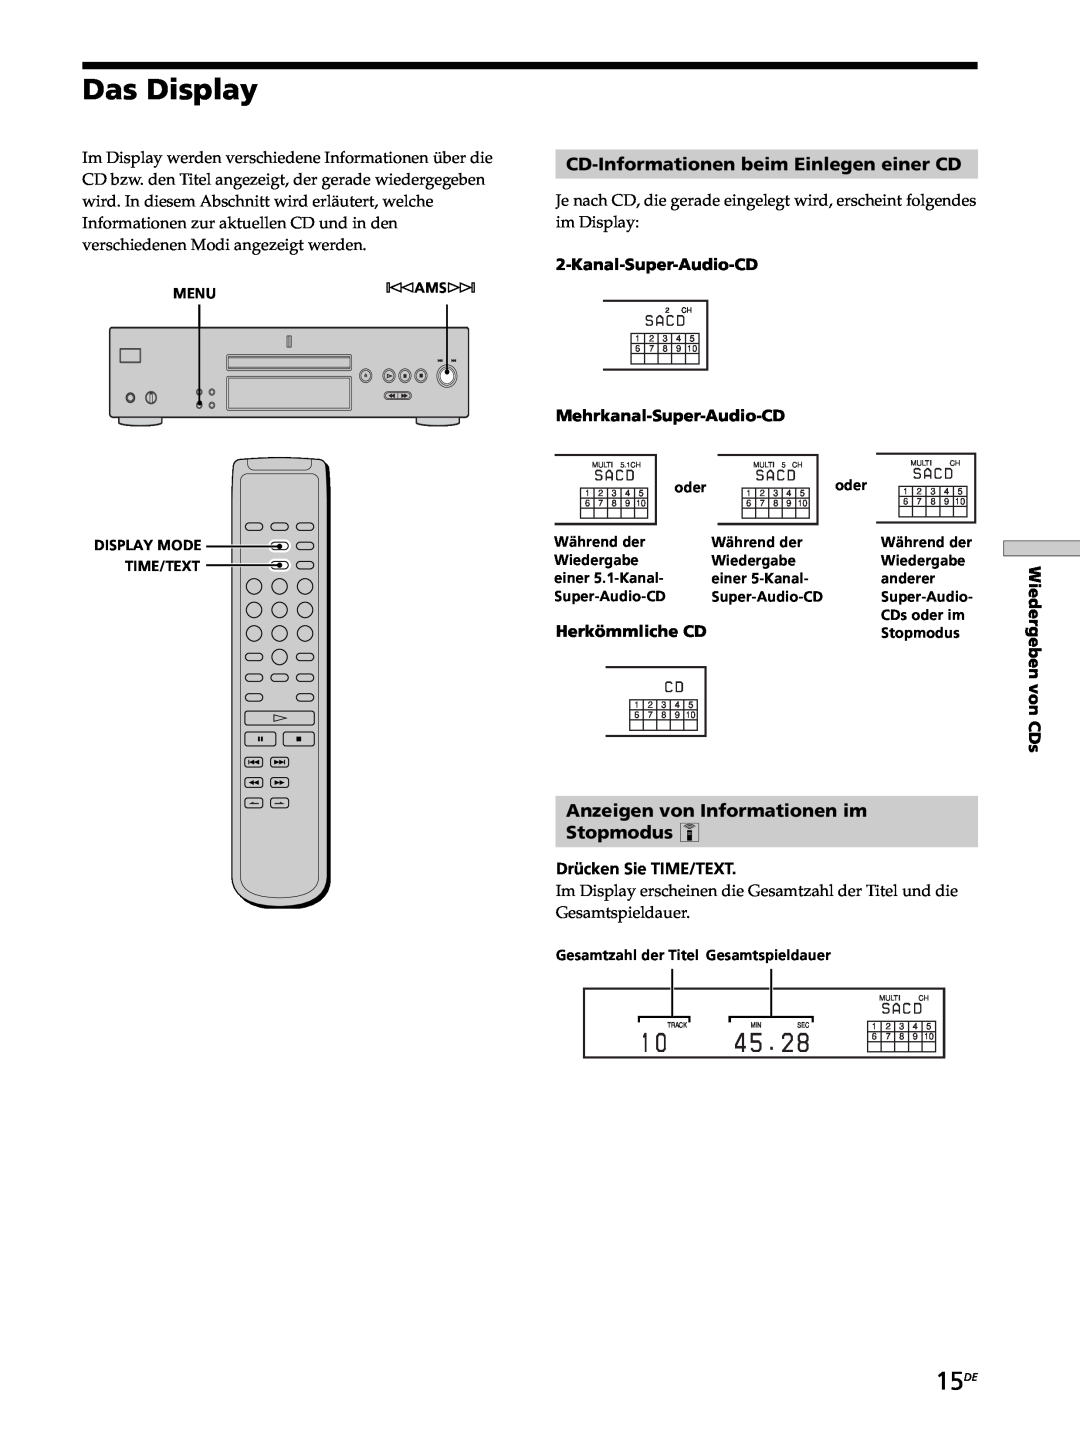 Sony SCD-XB770 Das Display, 15DE, CD-Informationenbeim Einlegen einer CD, Anzeigen von Informationen im Stopmodus Z 